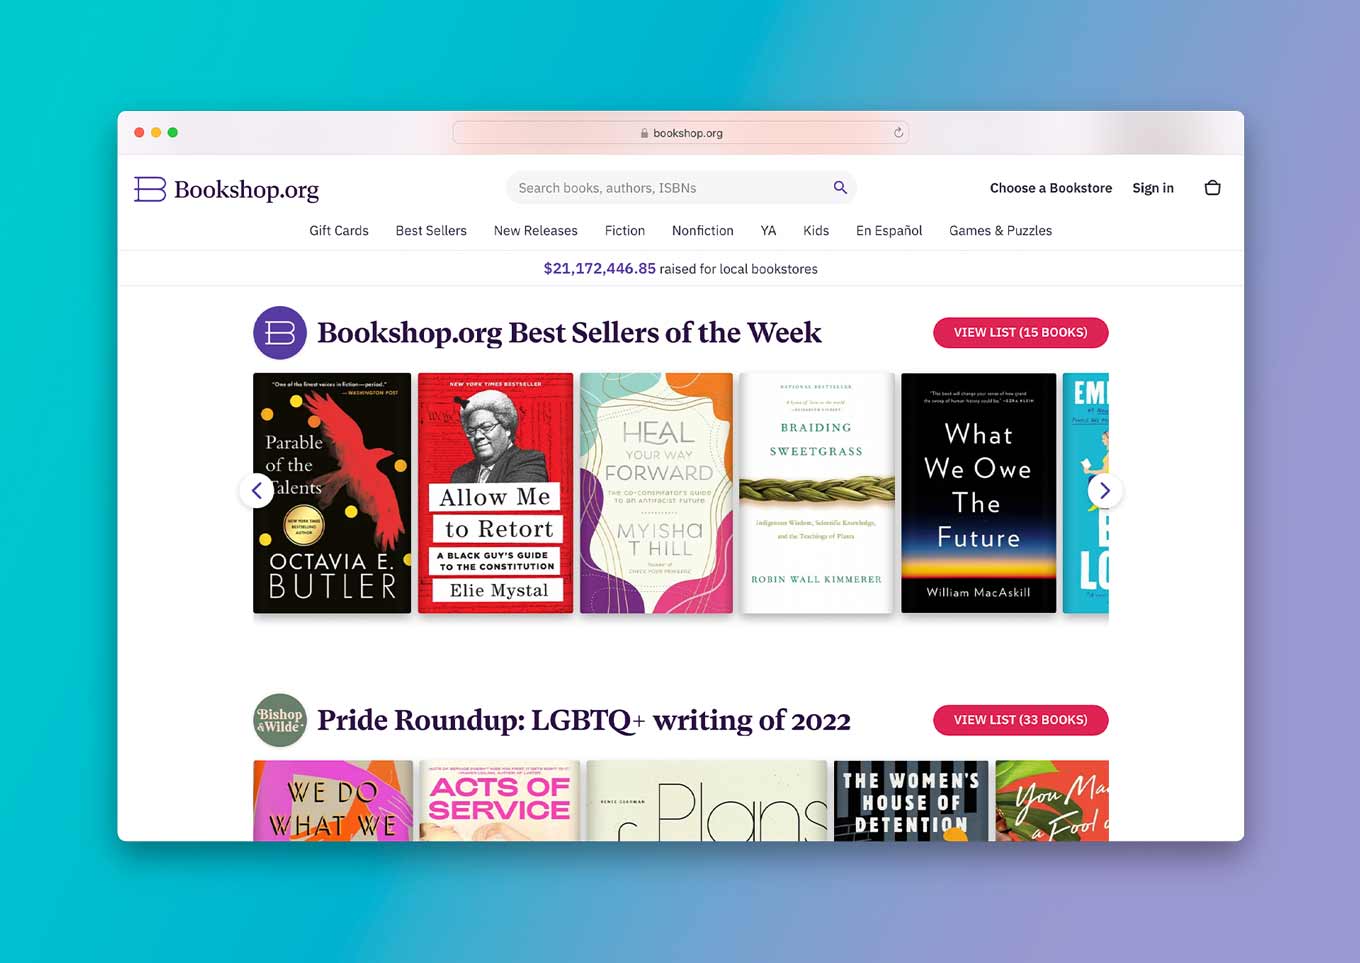 Bookshop.org Website: "Bestsellers van de Week" / "Pride Roundup LGBTQ + Schrijven van 2022"